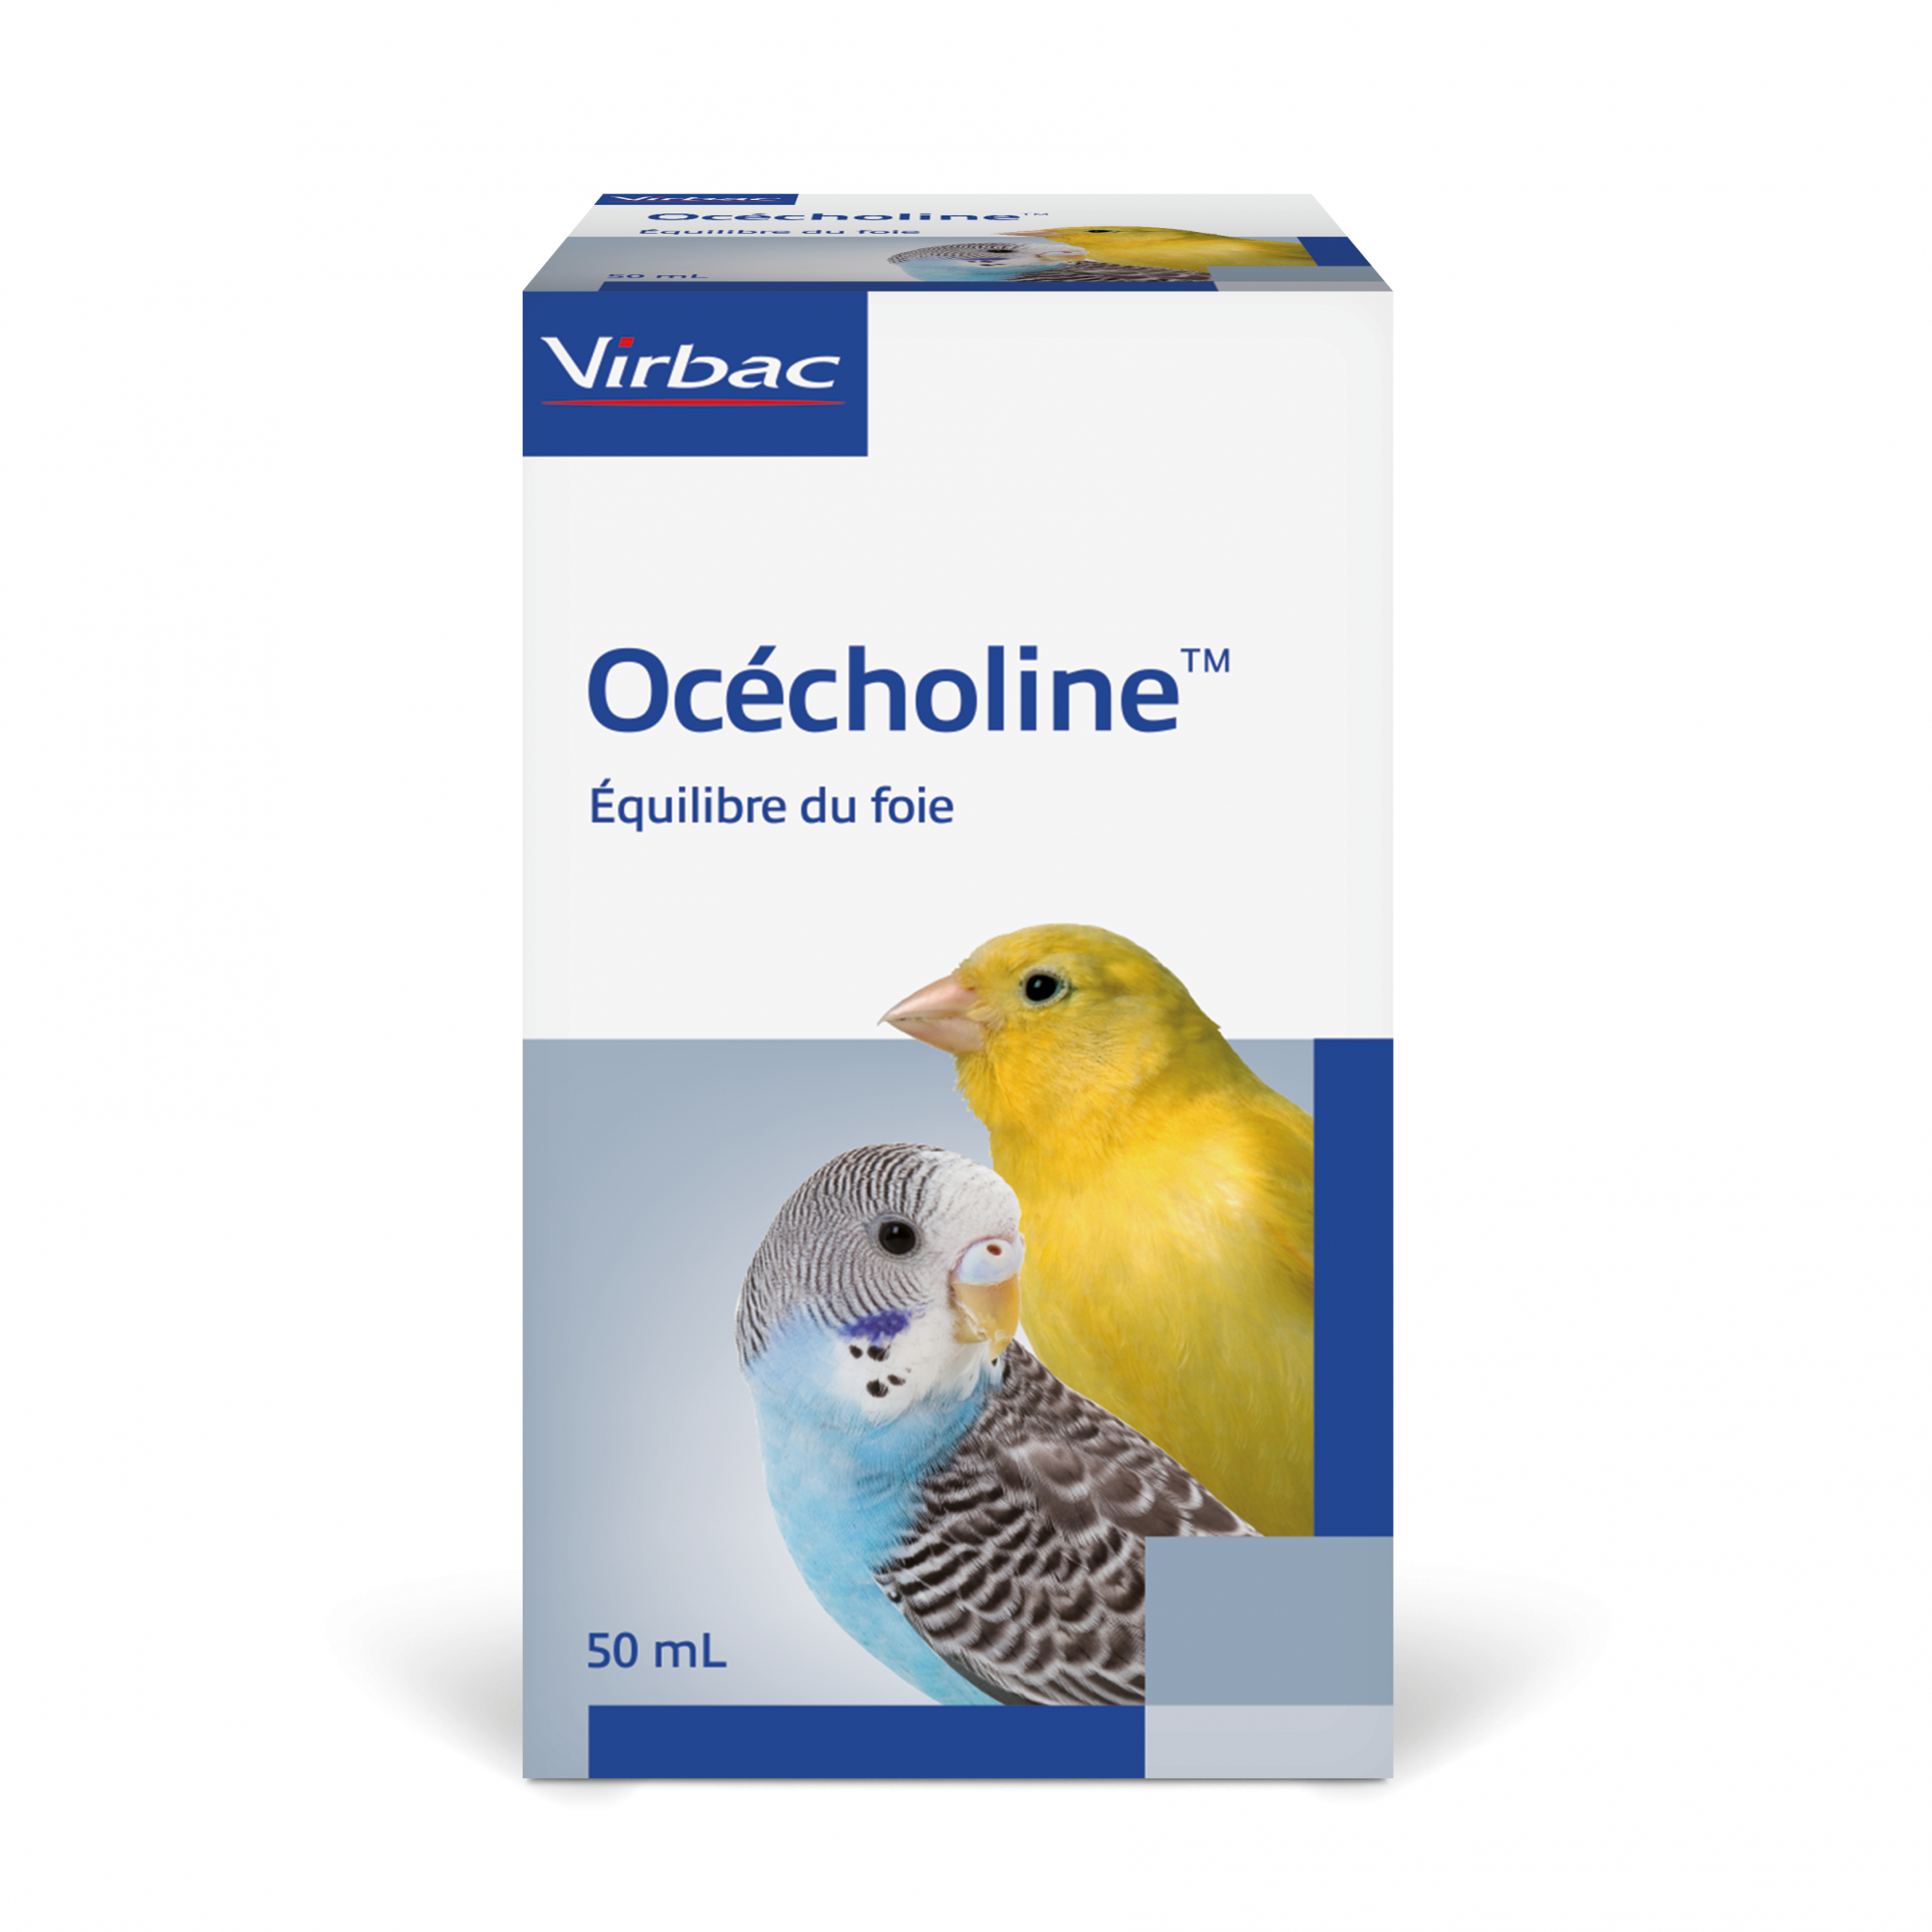 Virbac Ocecholine Begrenzt die Infiltration von Fett in der Leber.